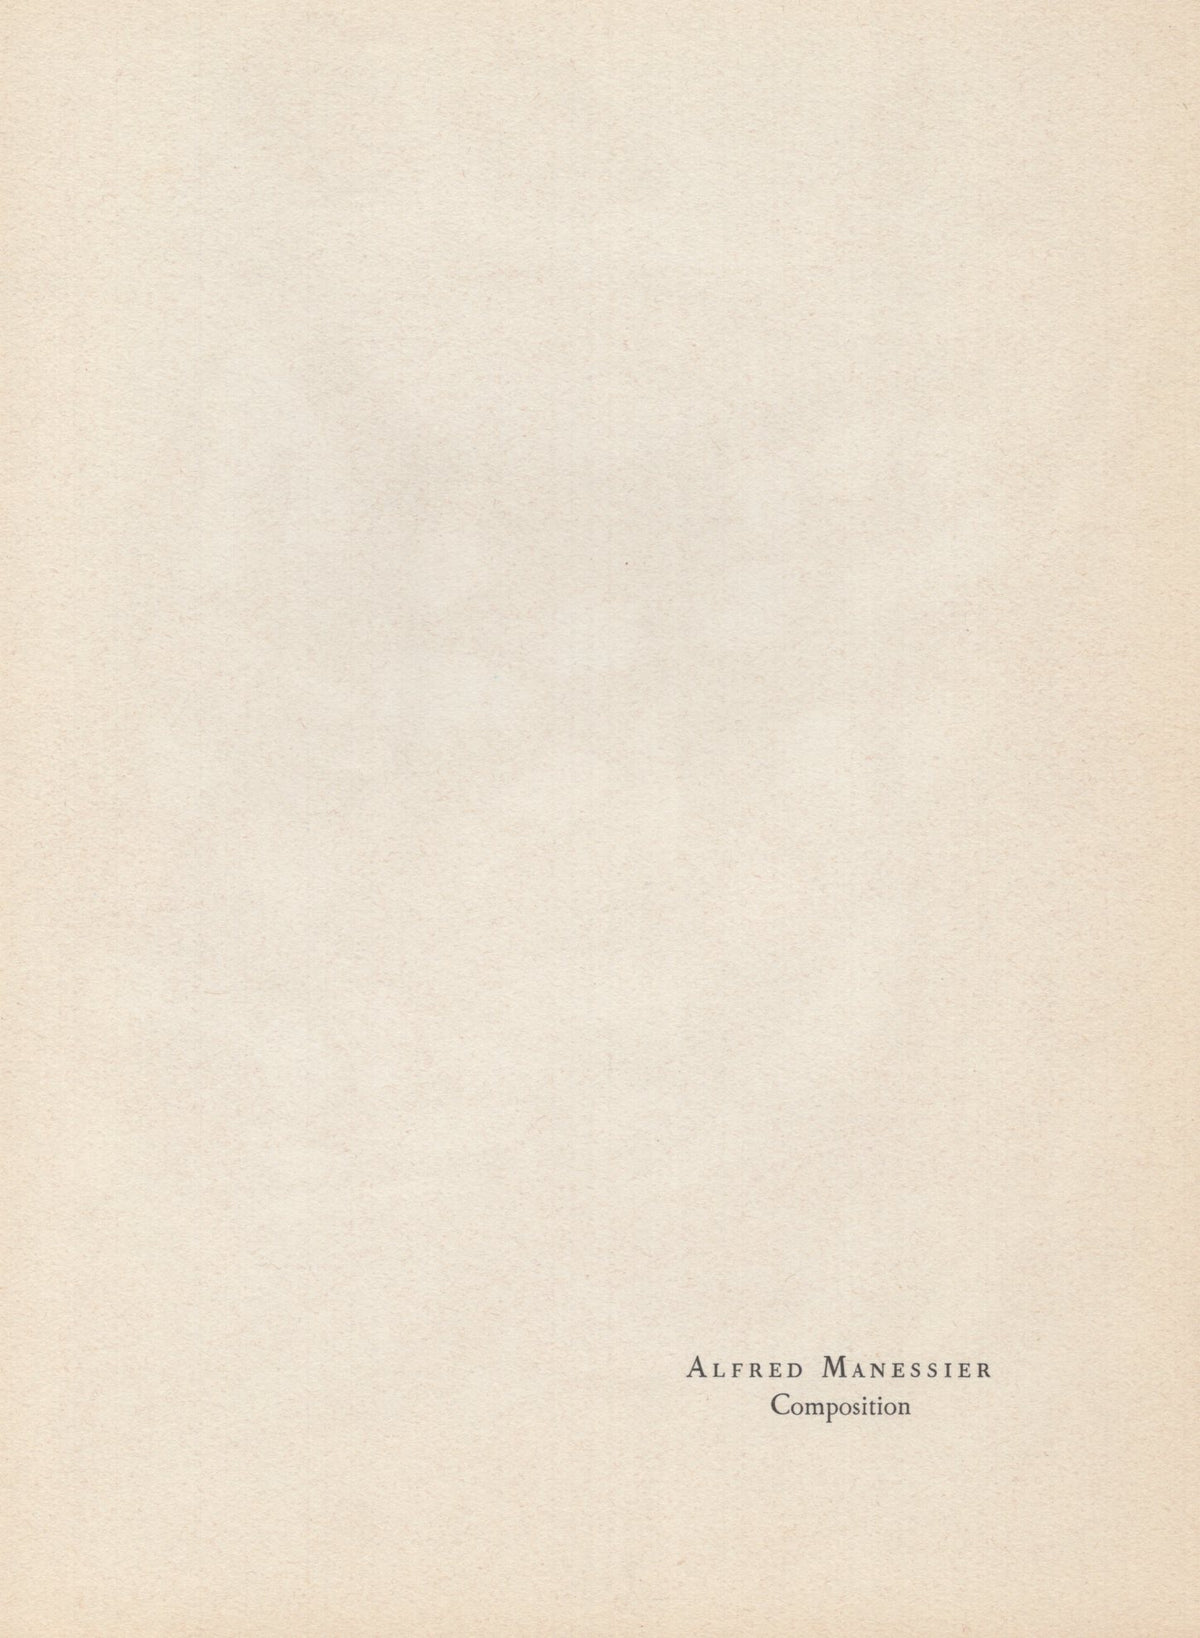 Alfred Manessier - &quot;Composition&quot; - Mourlot Press 1964 Lithograph - 7.5 x 10&quot;